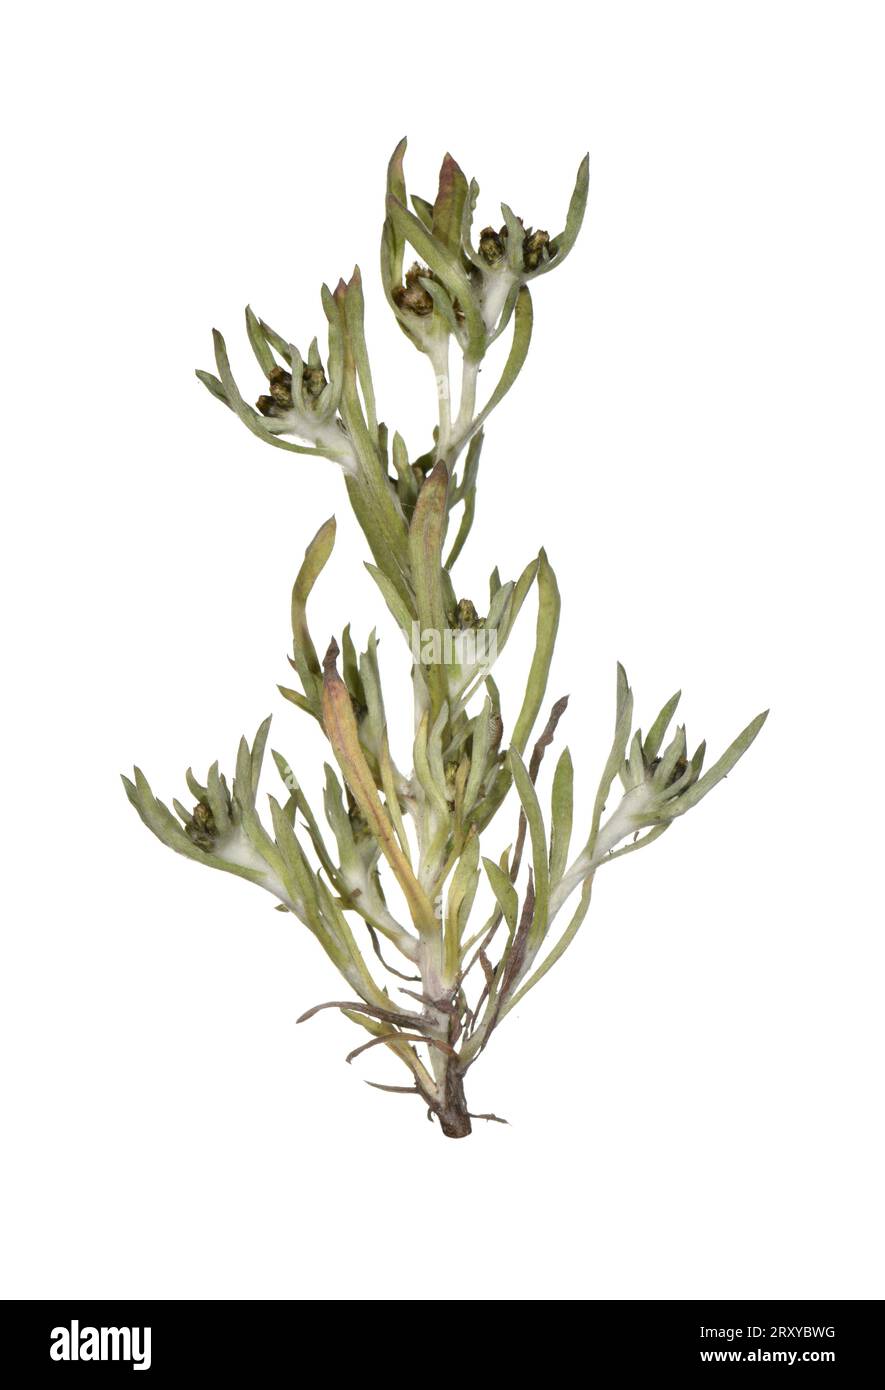 Marsh Cudweed - Gnaphalium uliginosum Stock Photo